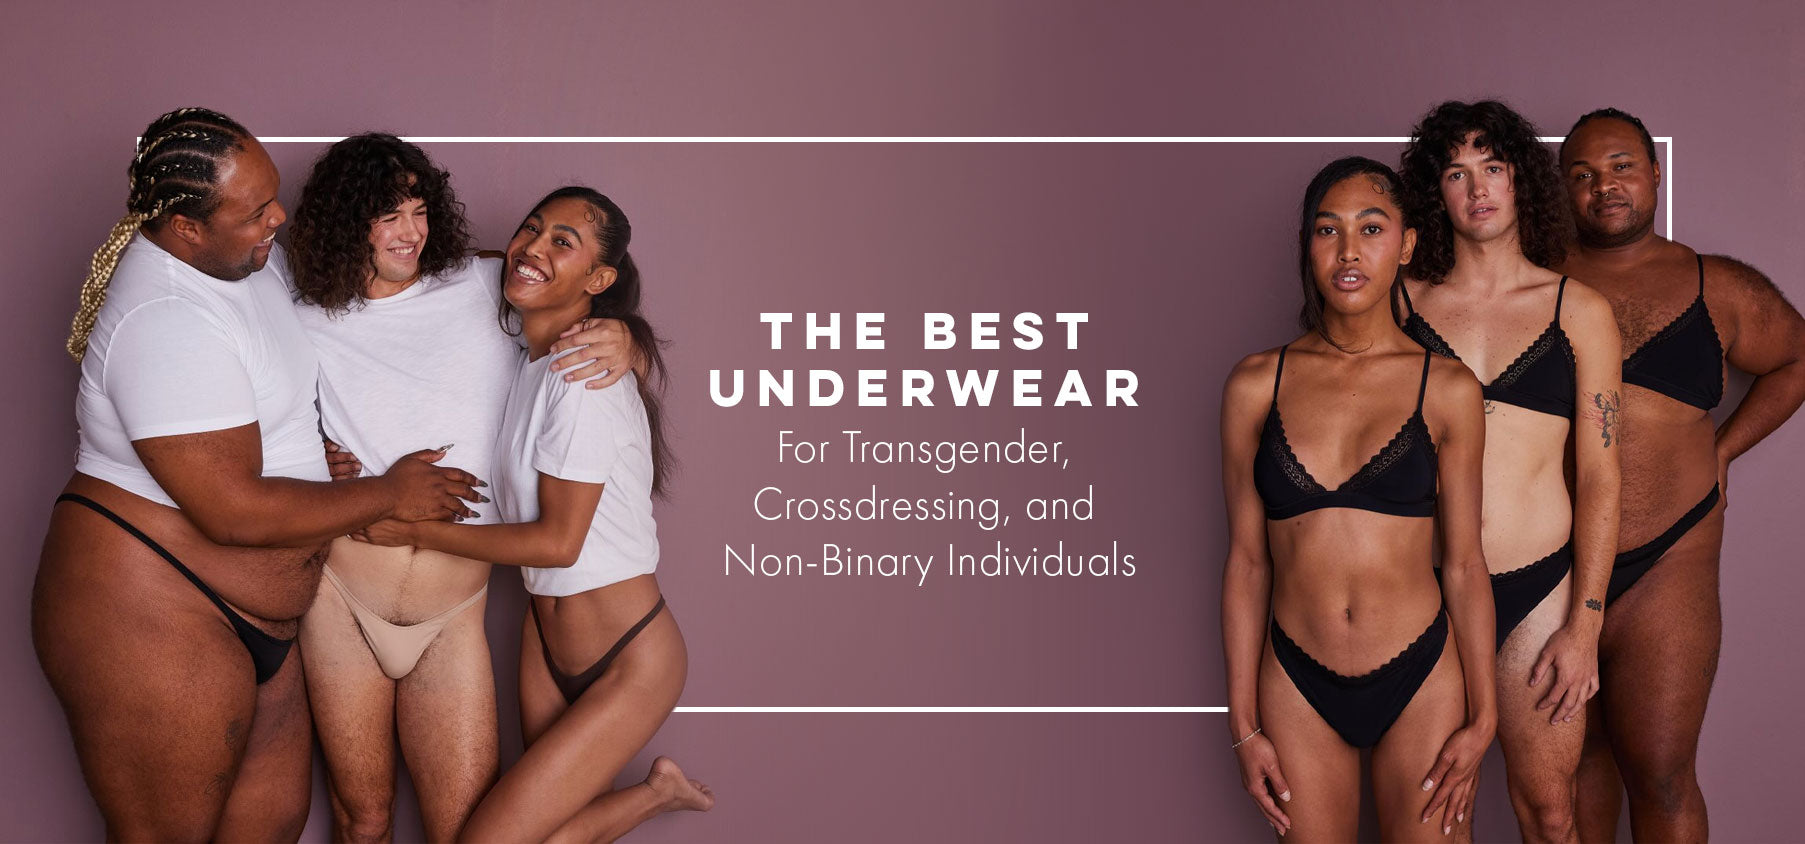 8 Best Underwear For Transgender In Australia